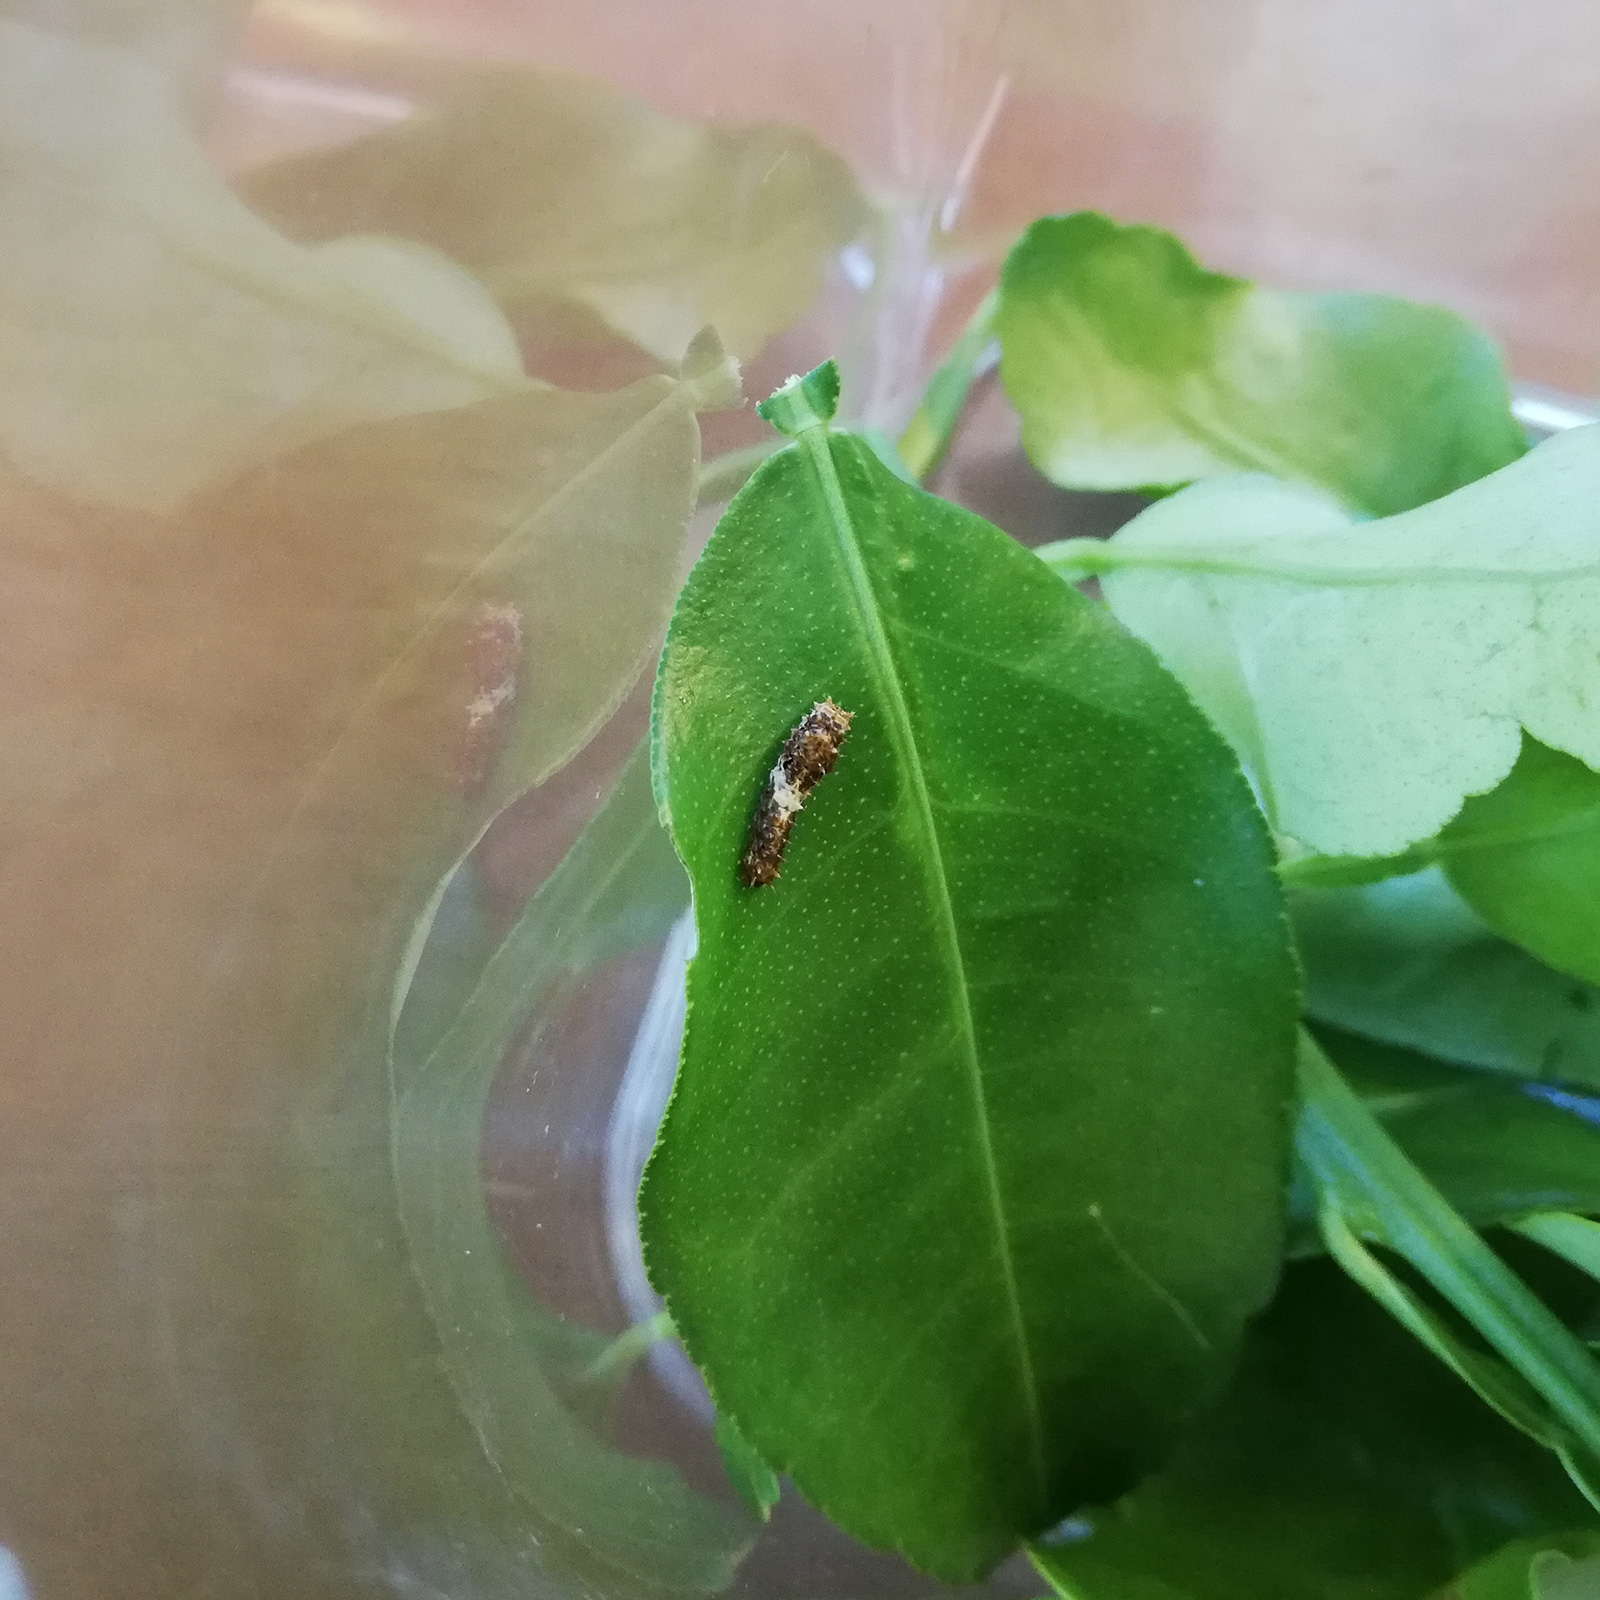 アゲハの幼虫が食べる葉っぱの種類は何？ | アオムシを育てて、アゲハチョウになった